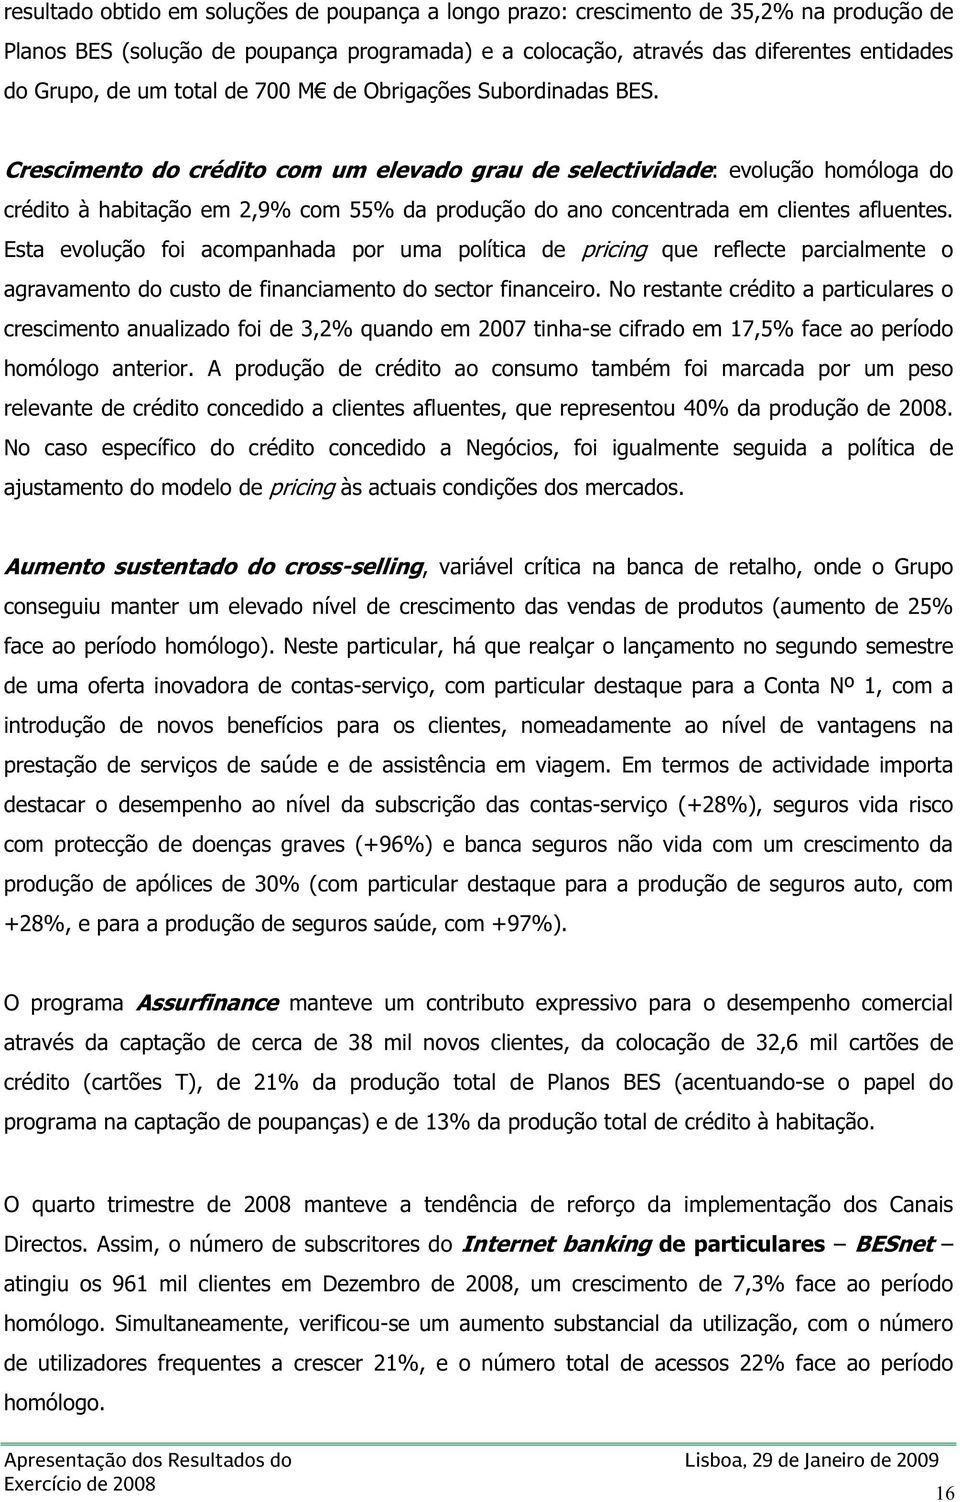 Crescimento do crédito com um elevado grau de selectividade: evolução homóloga do crédito à habitação em 2,9% com 55% da produção do ano concentrada em clientes afluentes.